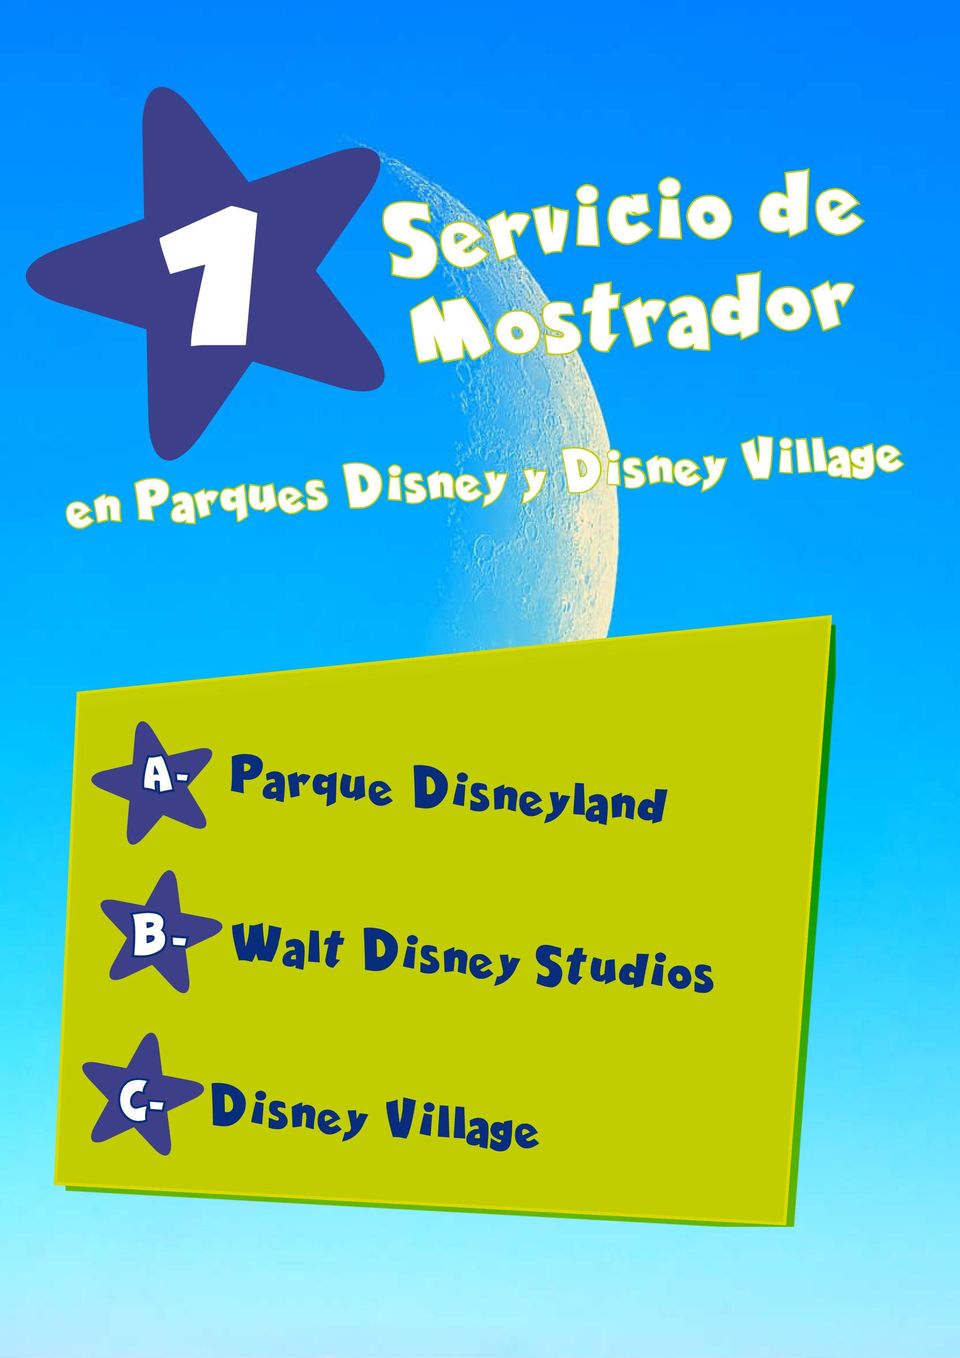 Village A- Parque Disneyland